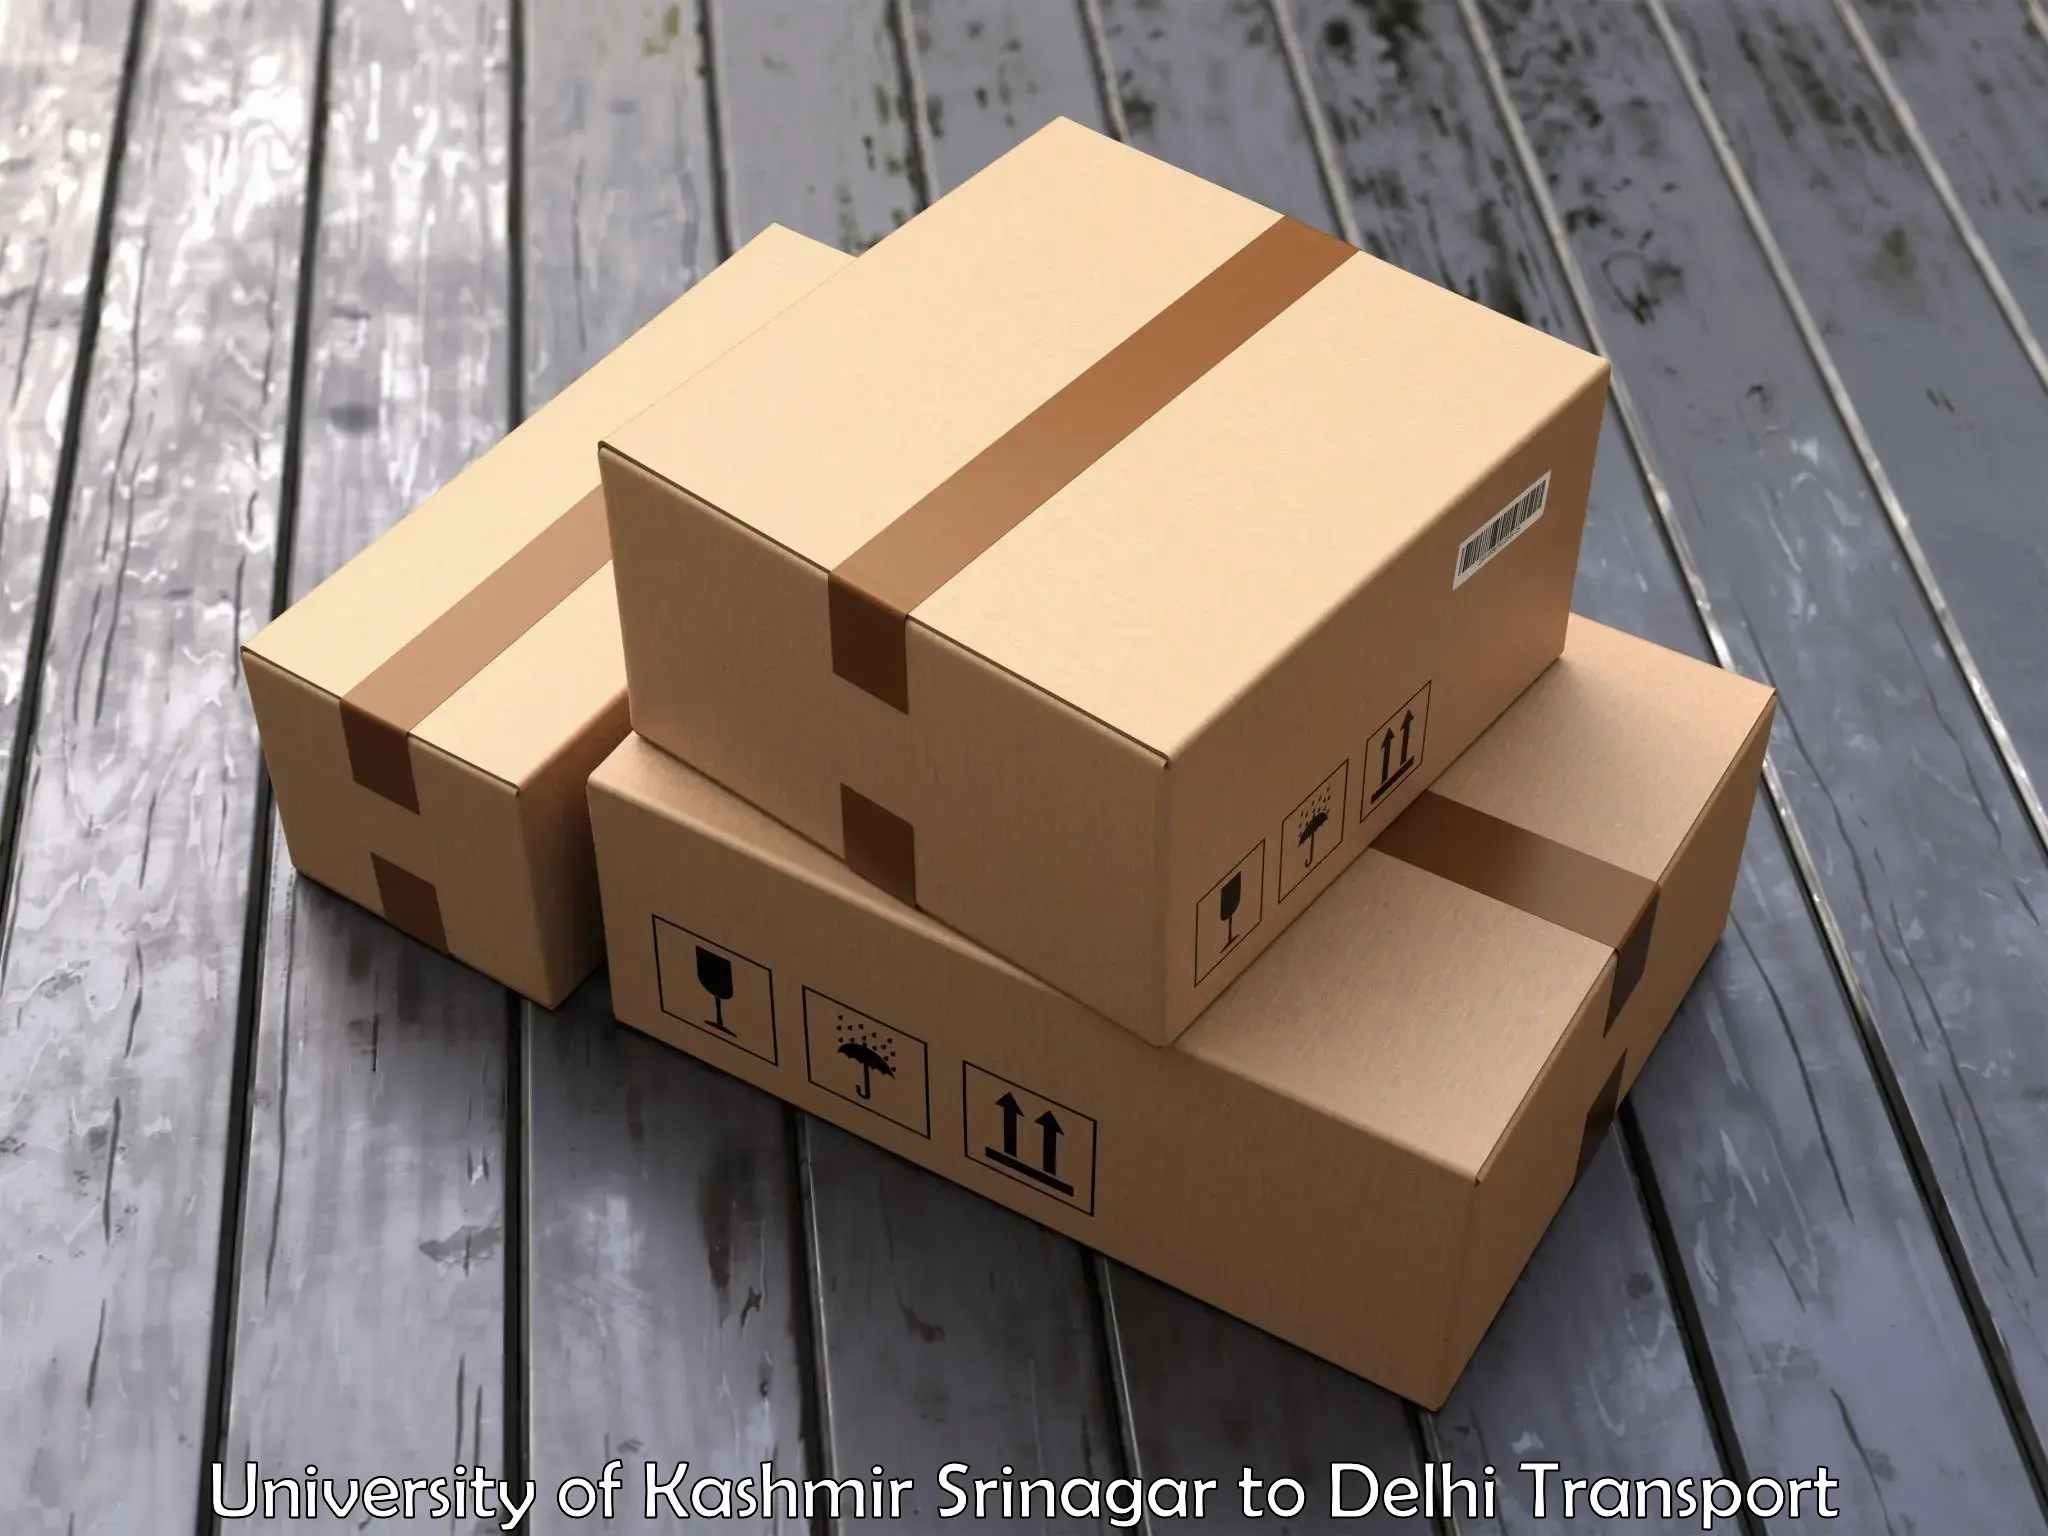 International cargo transportation services in University of Kashmir Srinagar to NIT Delhi